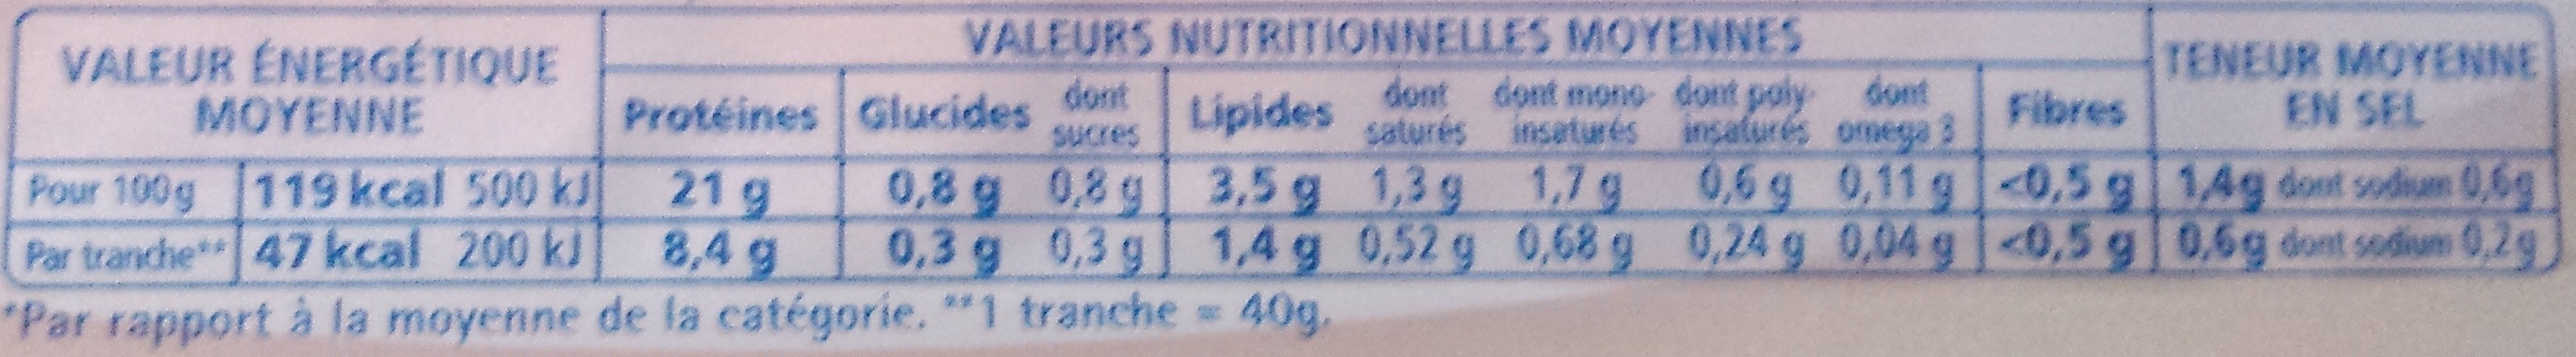 Le supérieur -25% de sel - Nutrition facts - fr